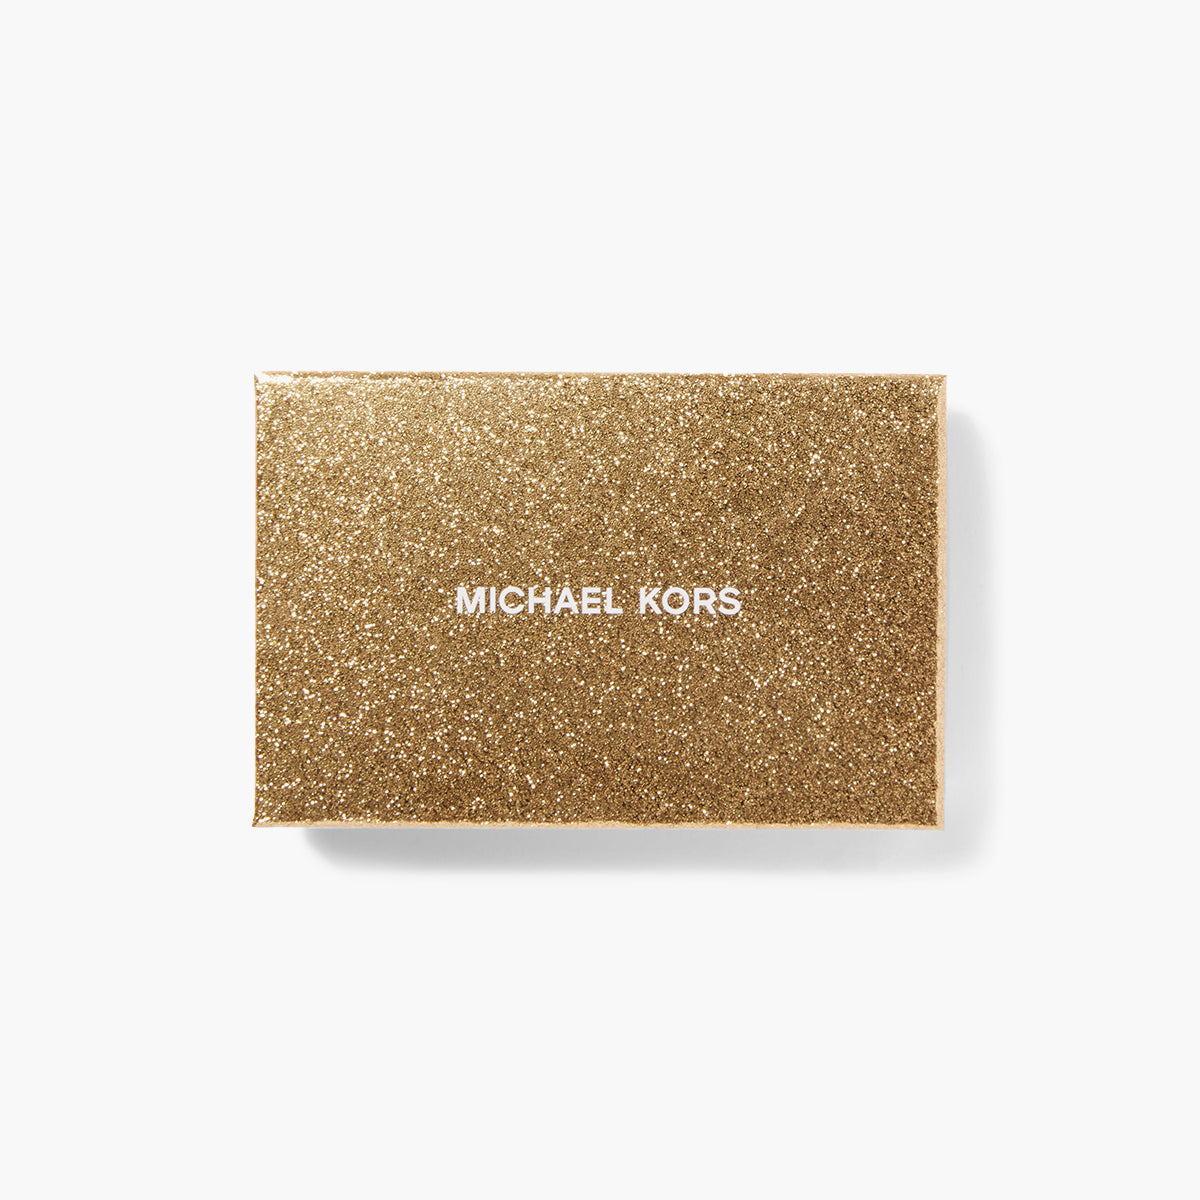 Michael Kors Empire Large Card Case | LEVISONS